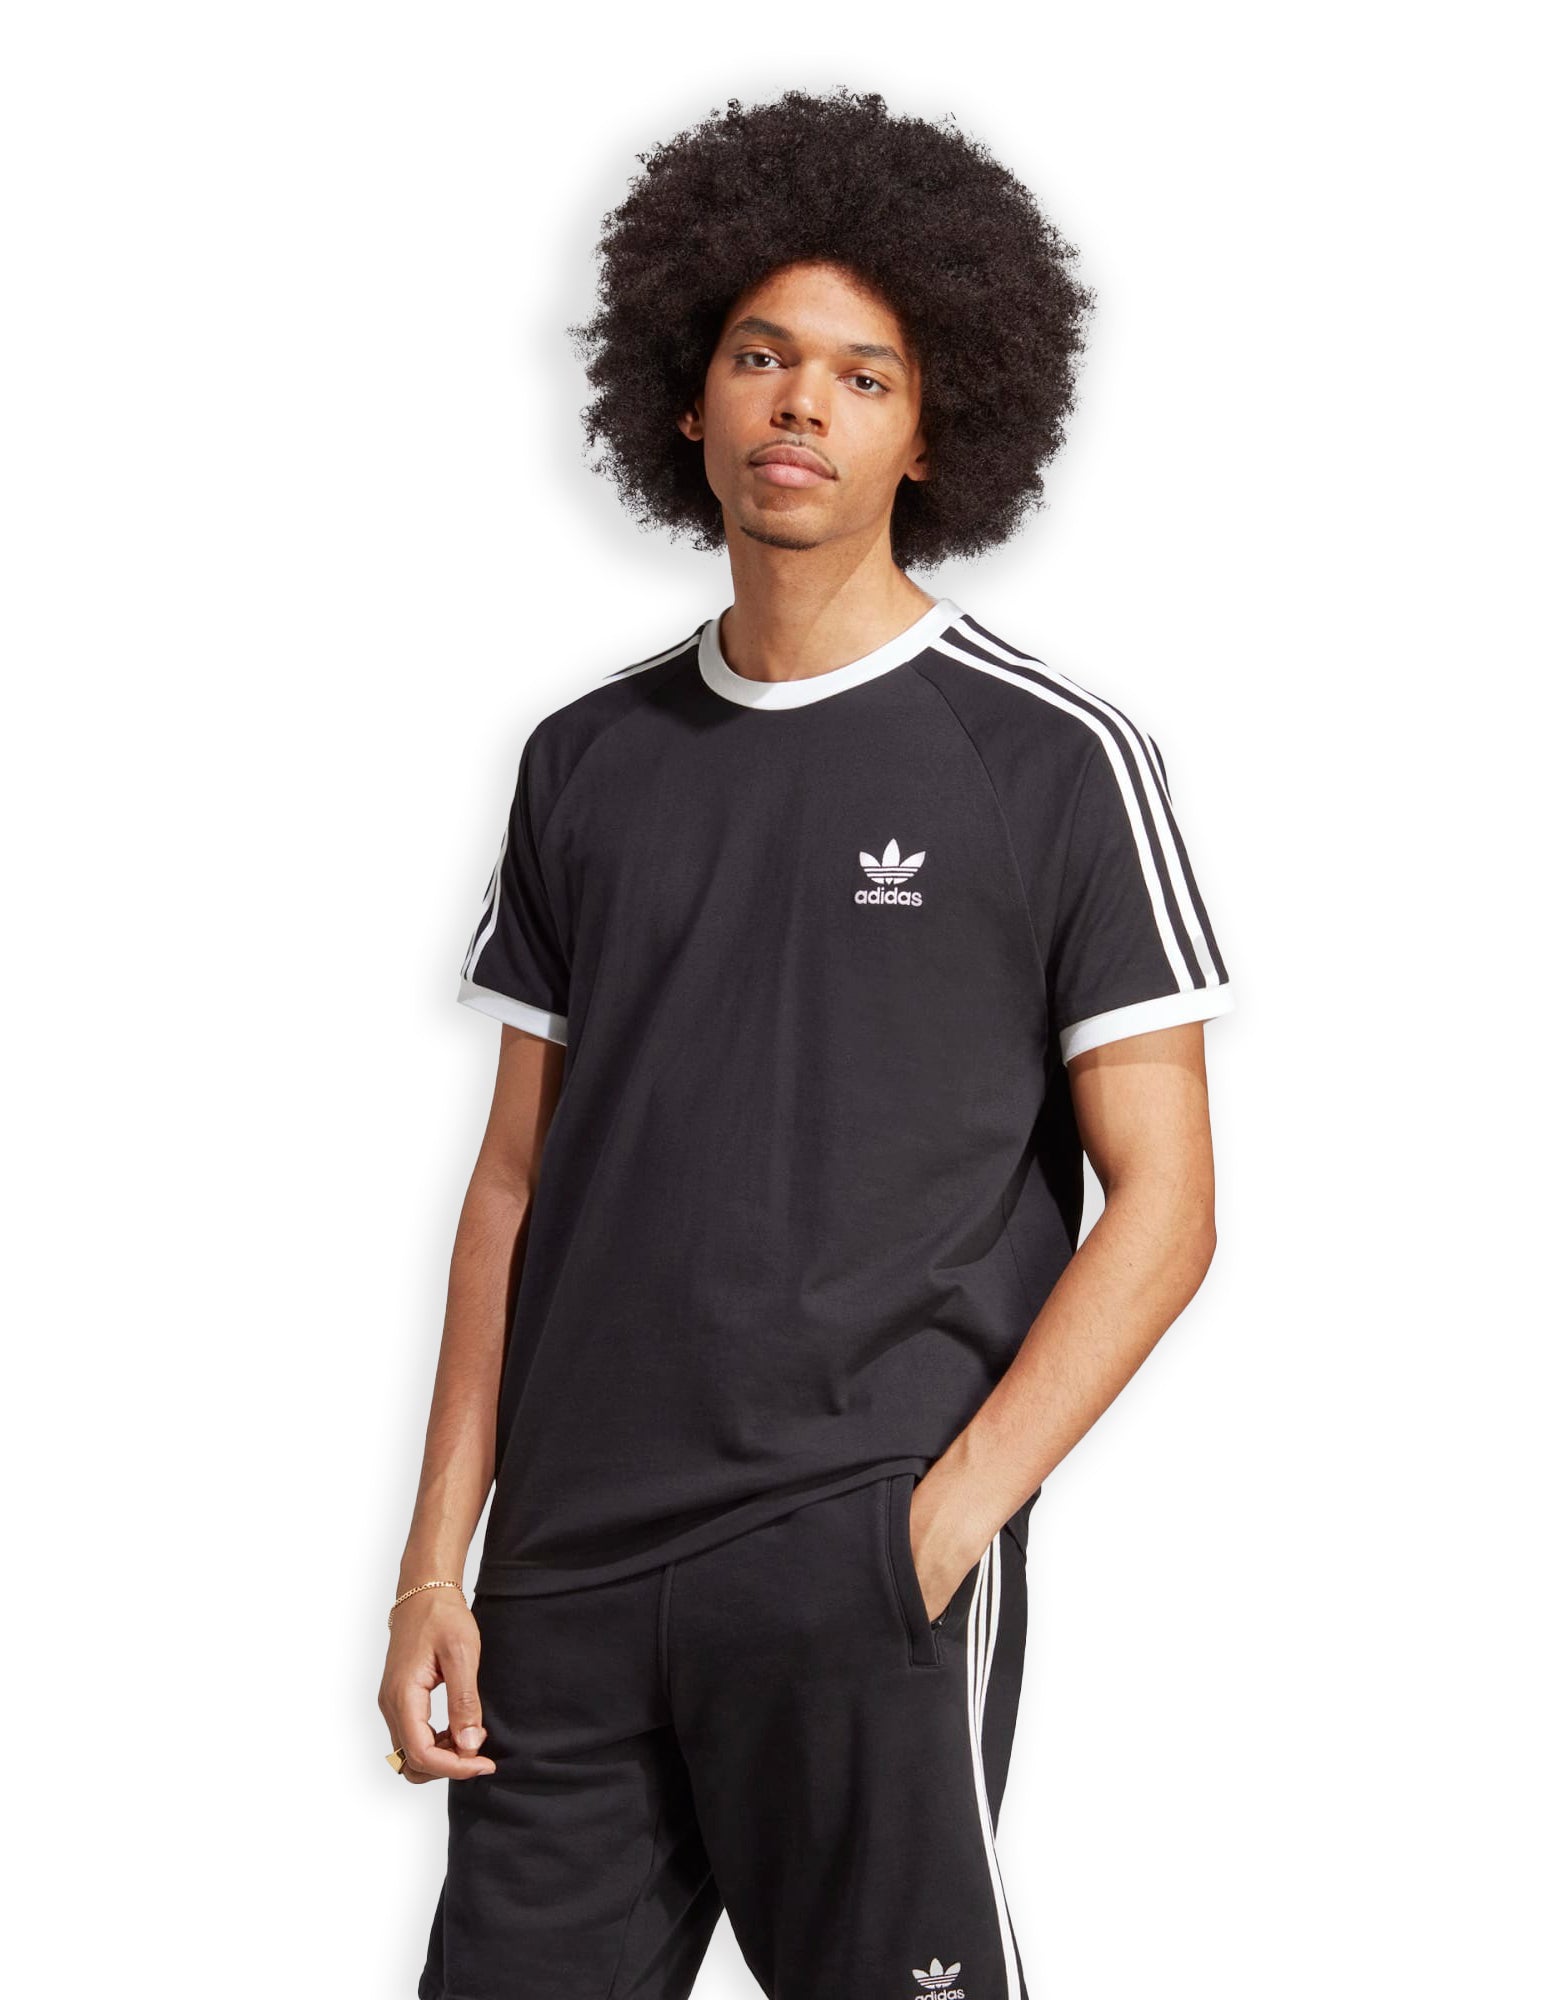 Adidas 3-Stripes Tee Black T-Shirt